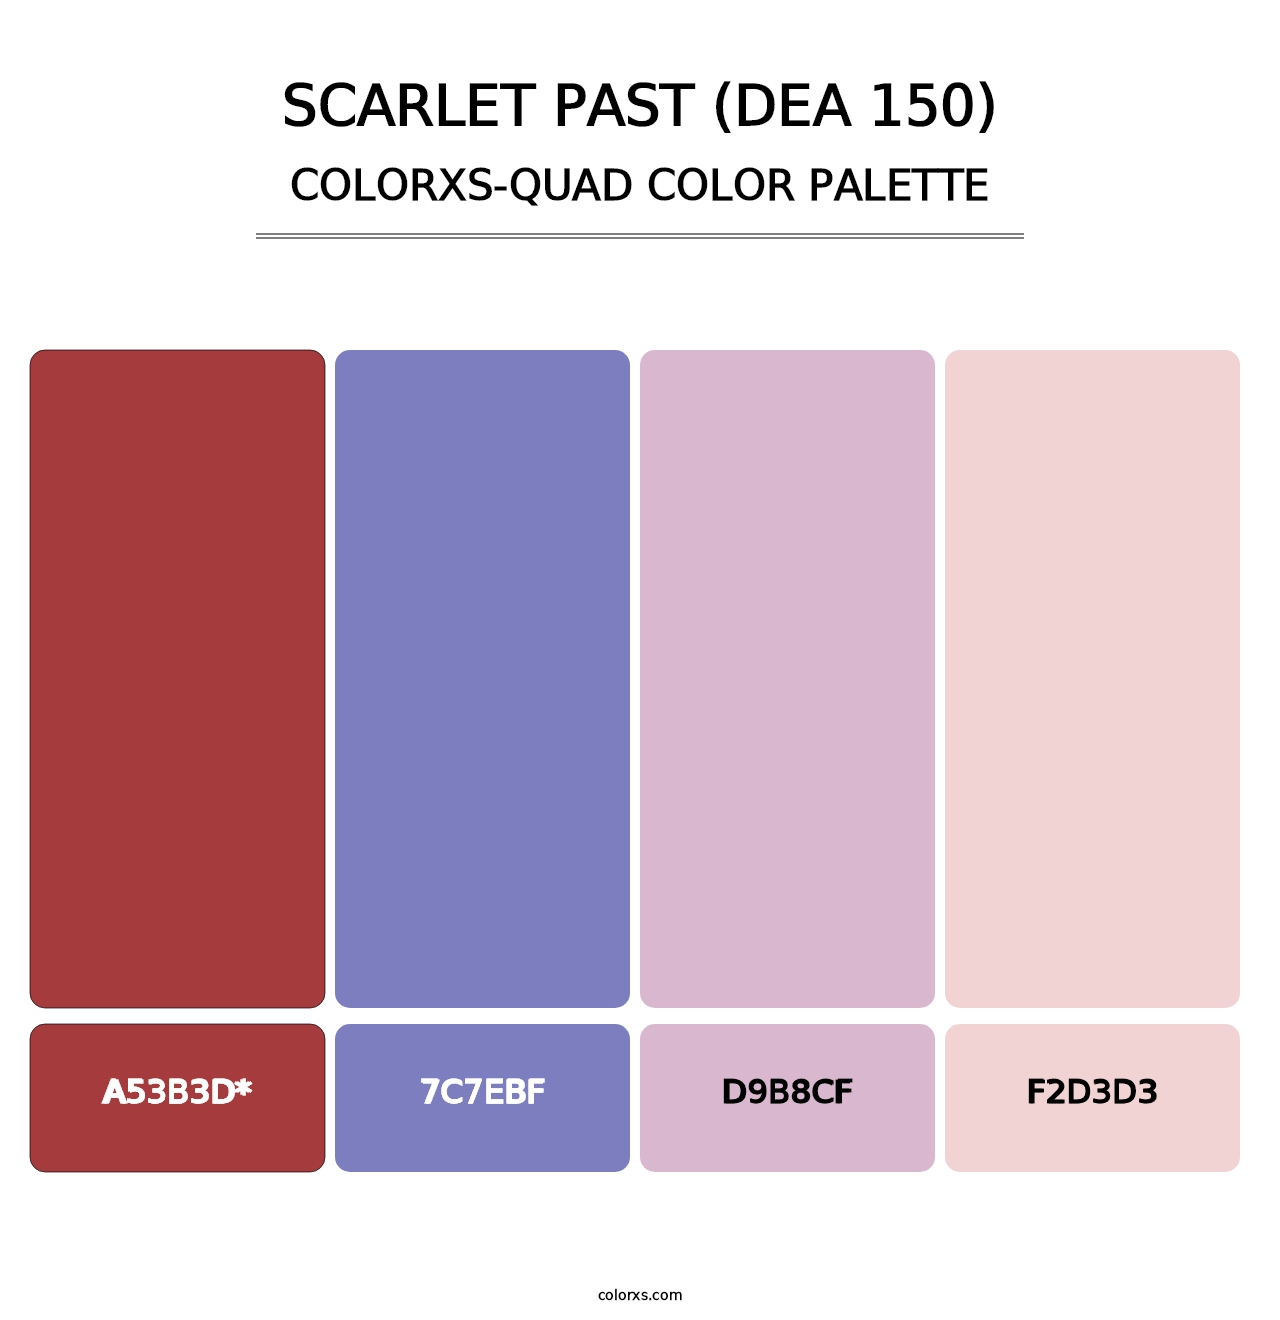 Scarlet Past (DEA 150) - Colorxs Quad Palette